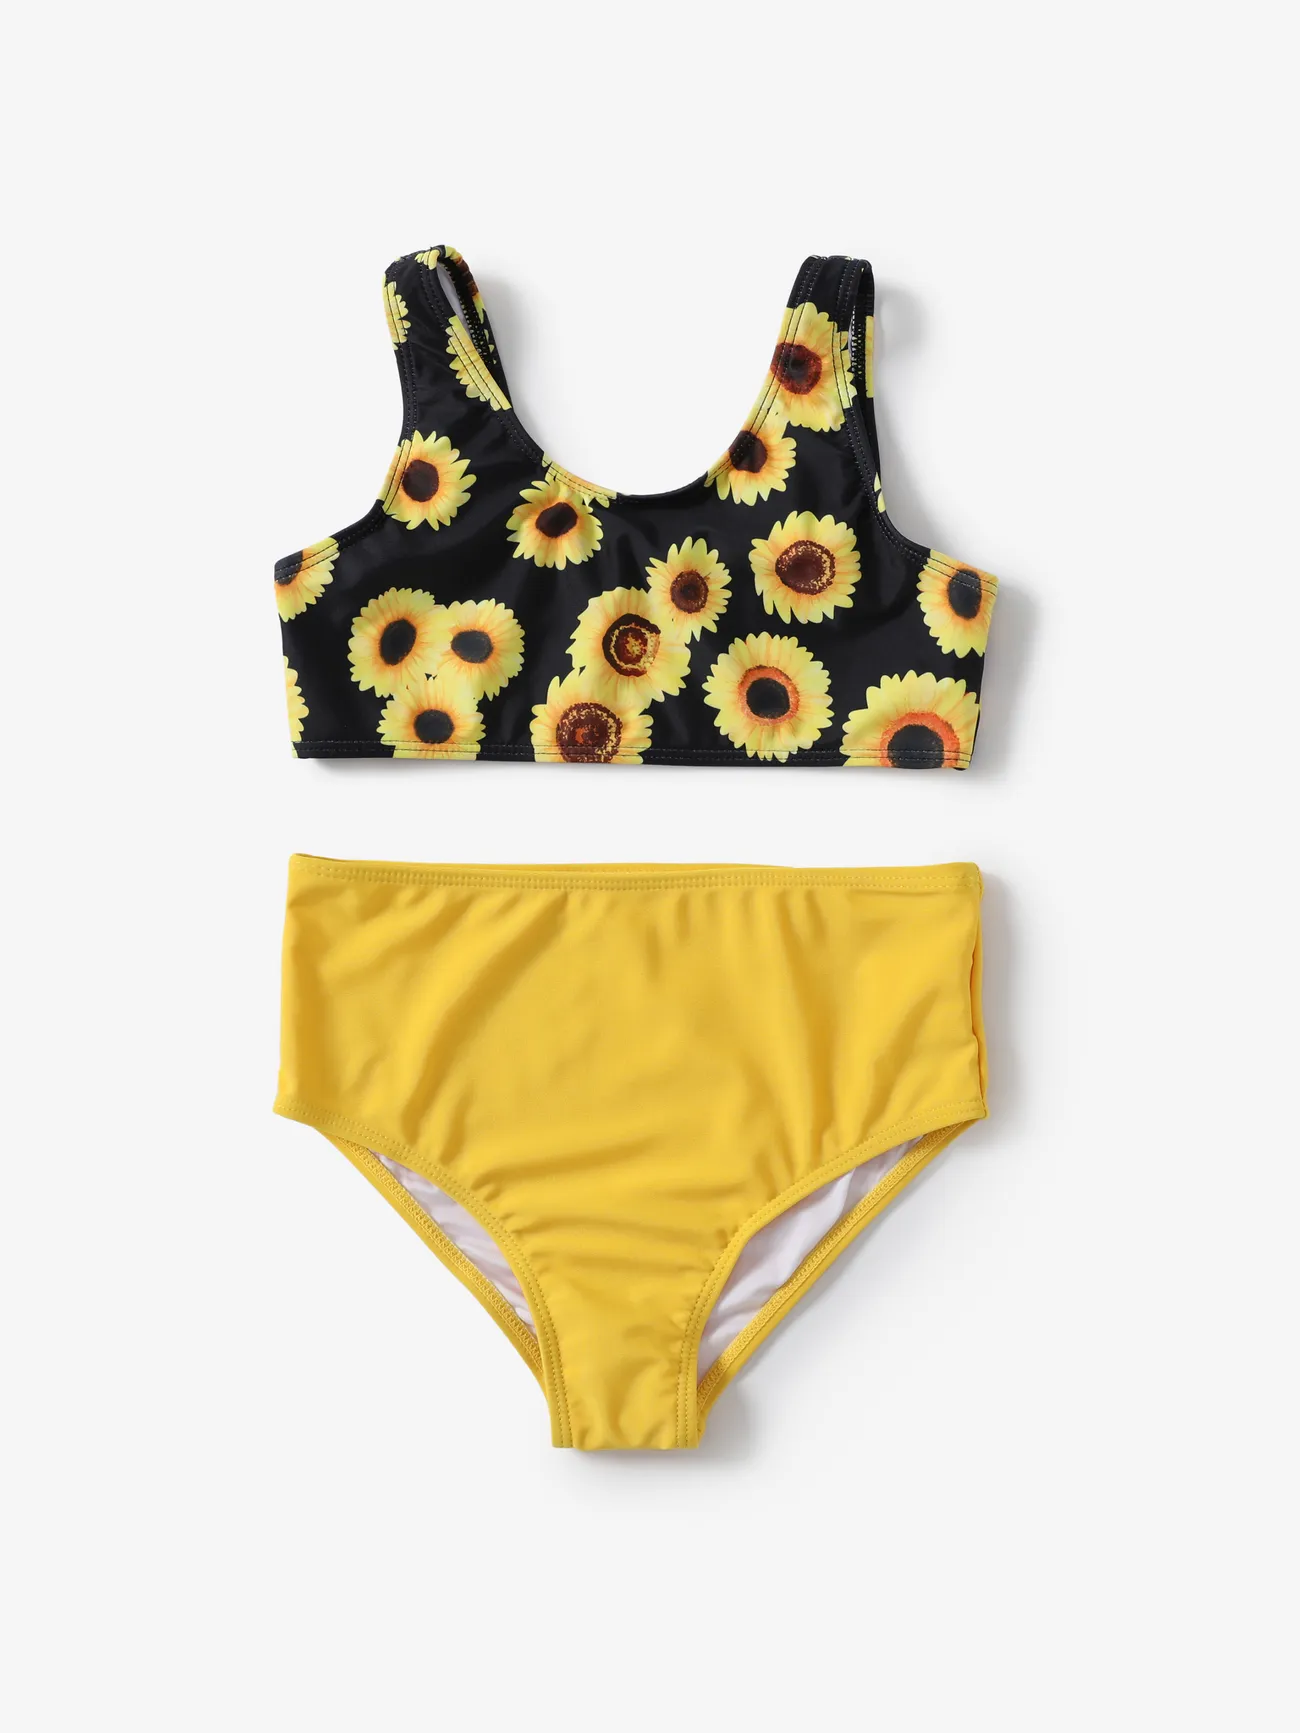 Kid Girl 3pcs Sunflower Bandage Tight Swimsuits Set Yellow big image 1